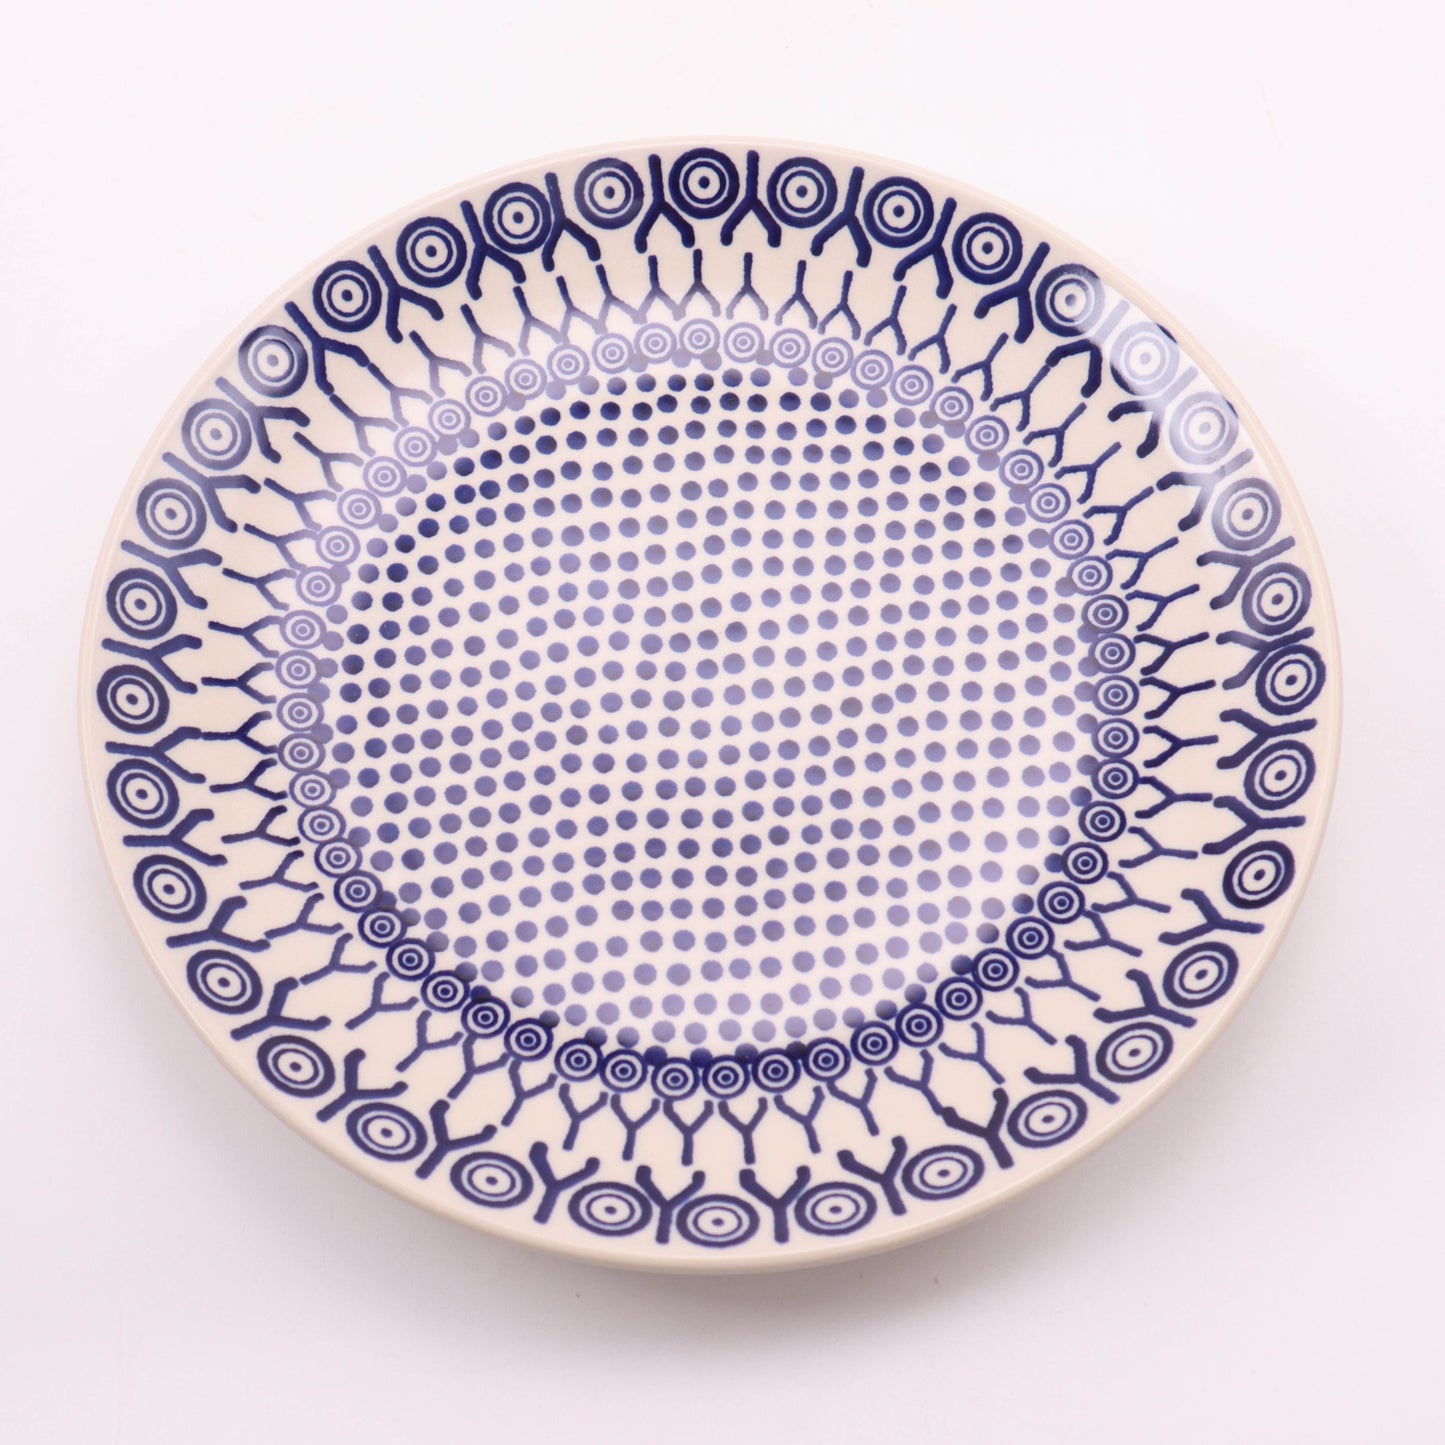 10" Dinner Plate. Pattern: Dot Matrix